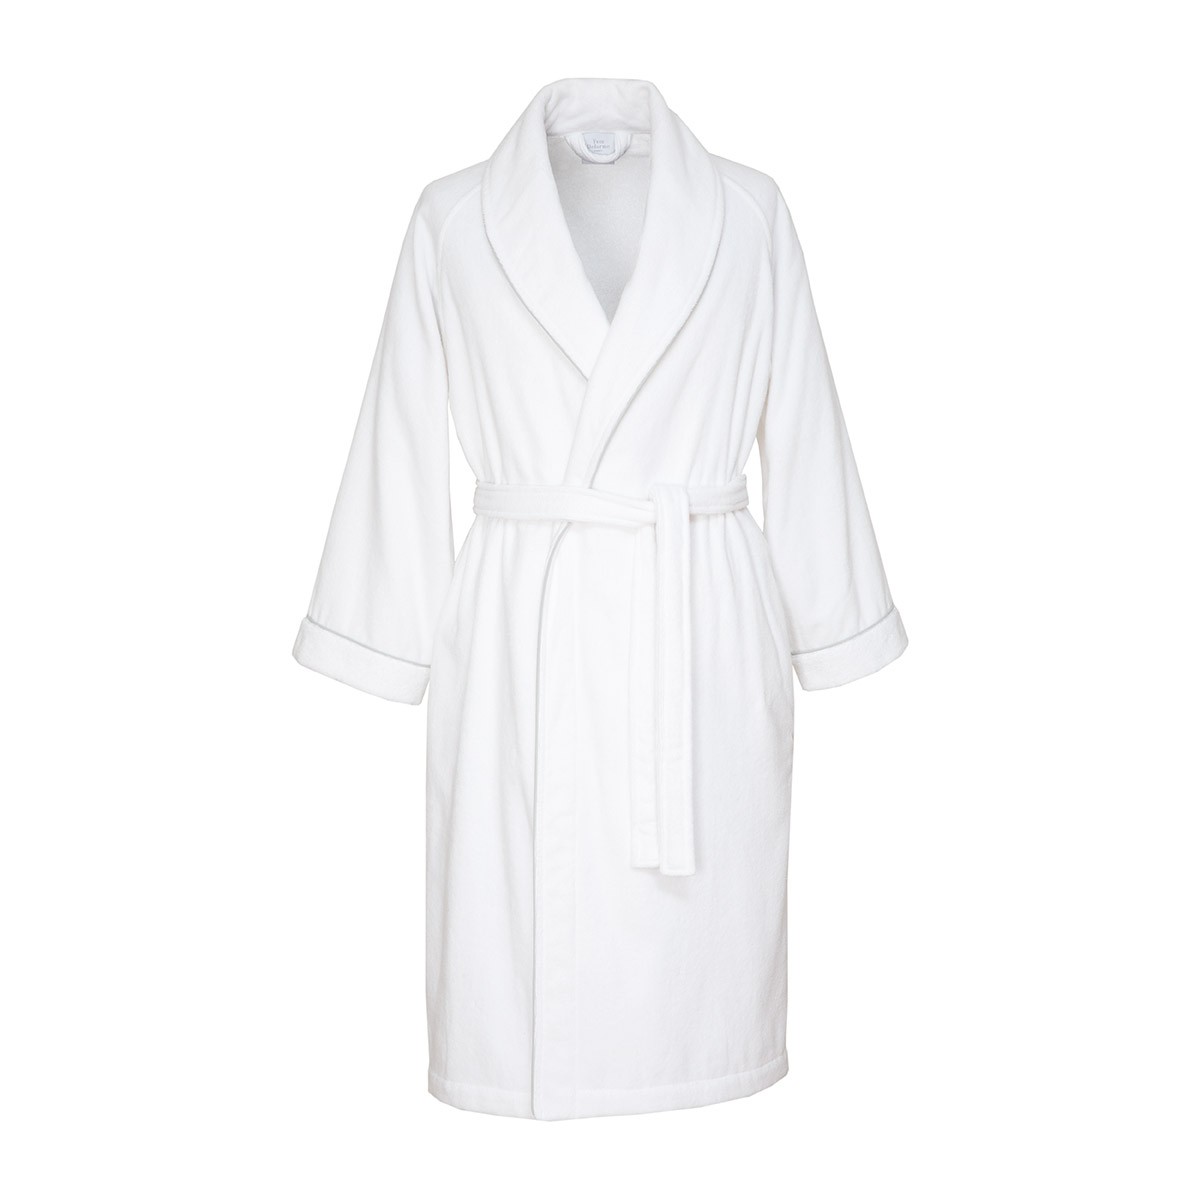 Luxury bathrobes, kimonos - Yves Delorme Online USA